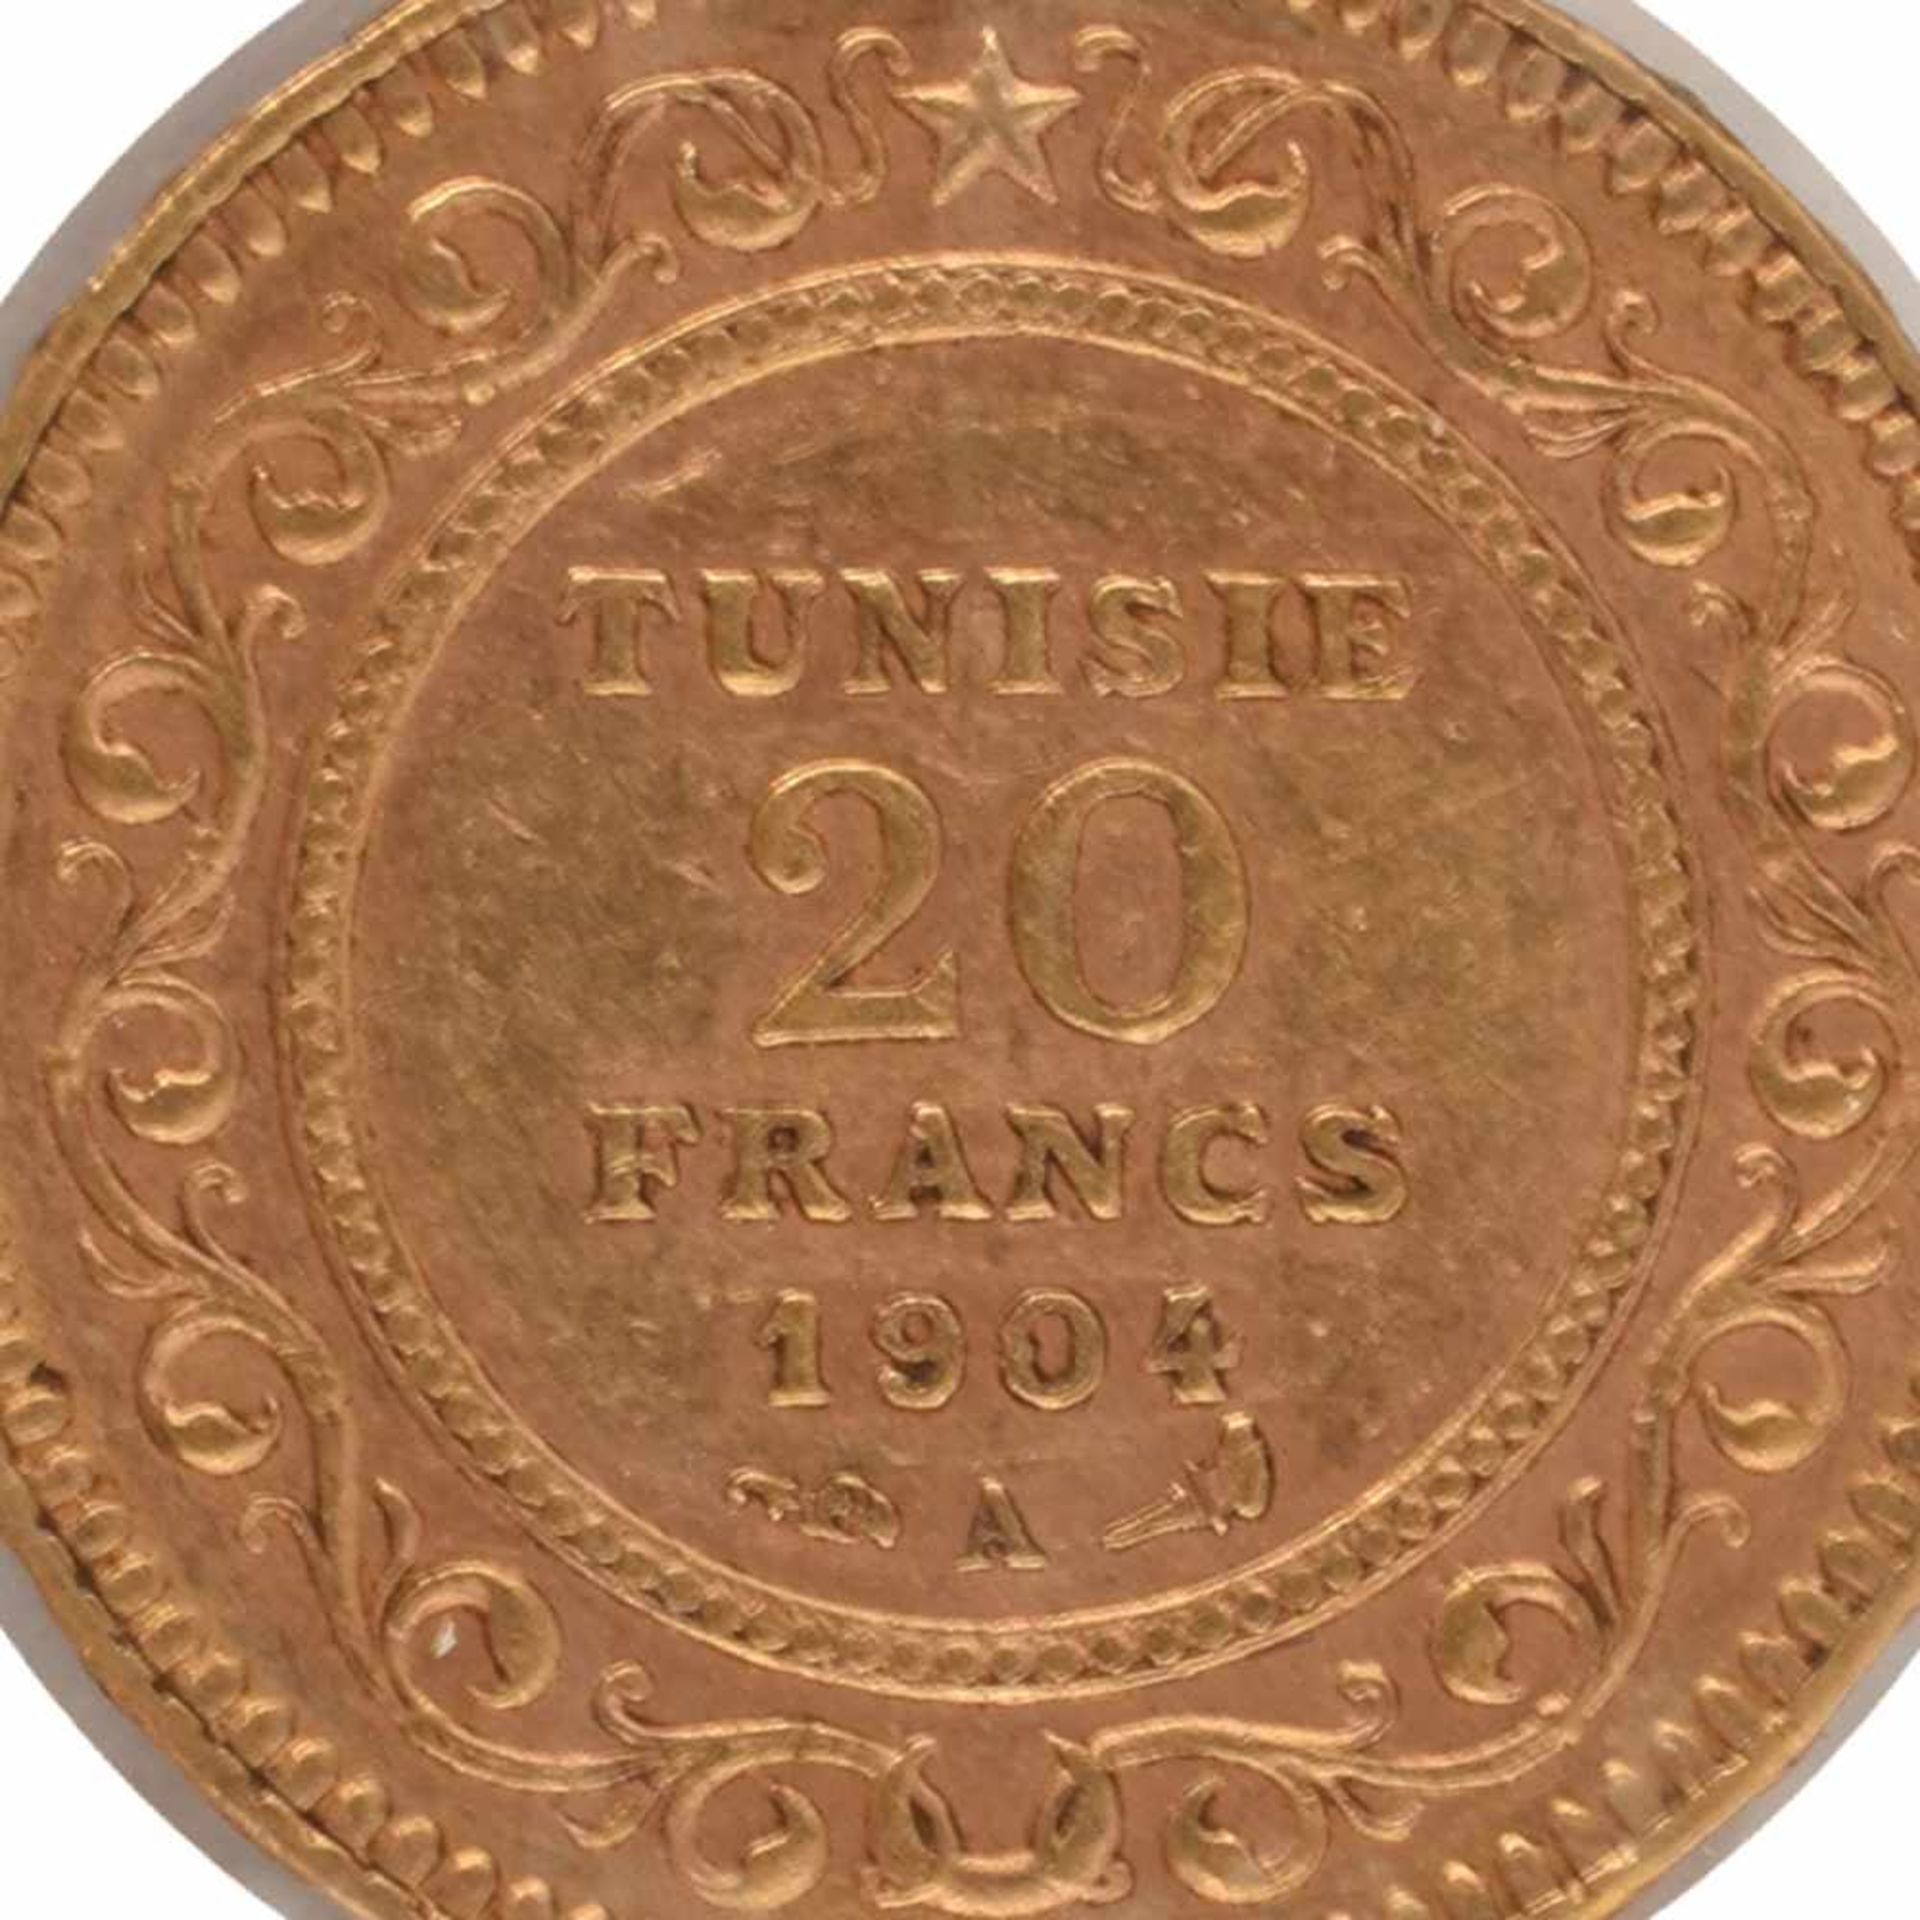 Goldmünze Tunesien 1904 20 Francs in Gold, 900/1000, 6,45 g, av. Wertangabe und Arabesken, rv.